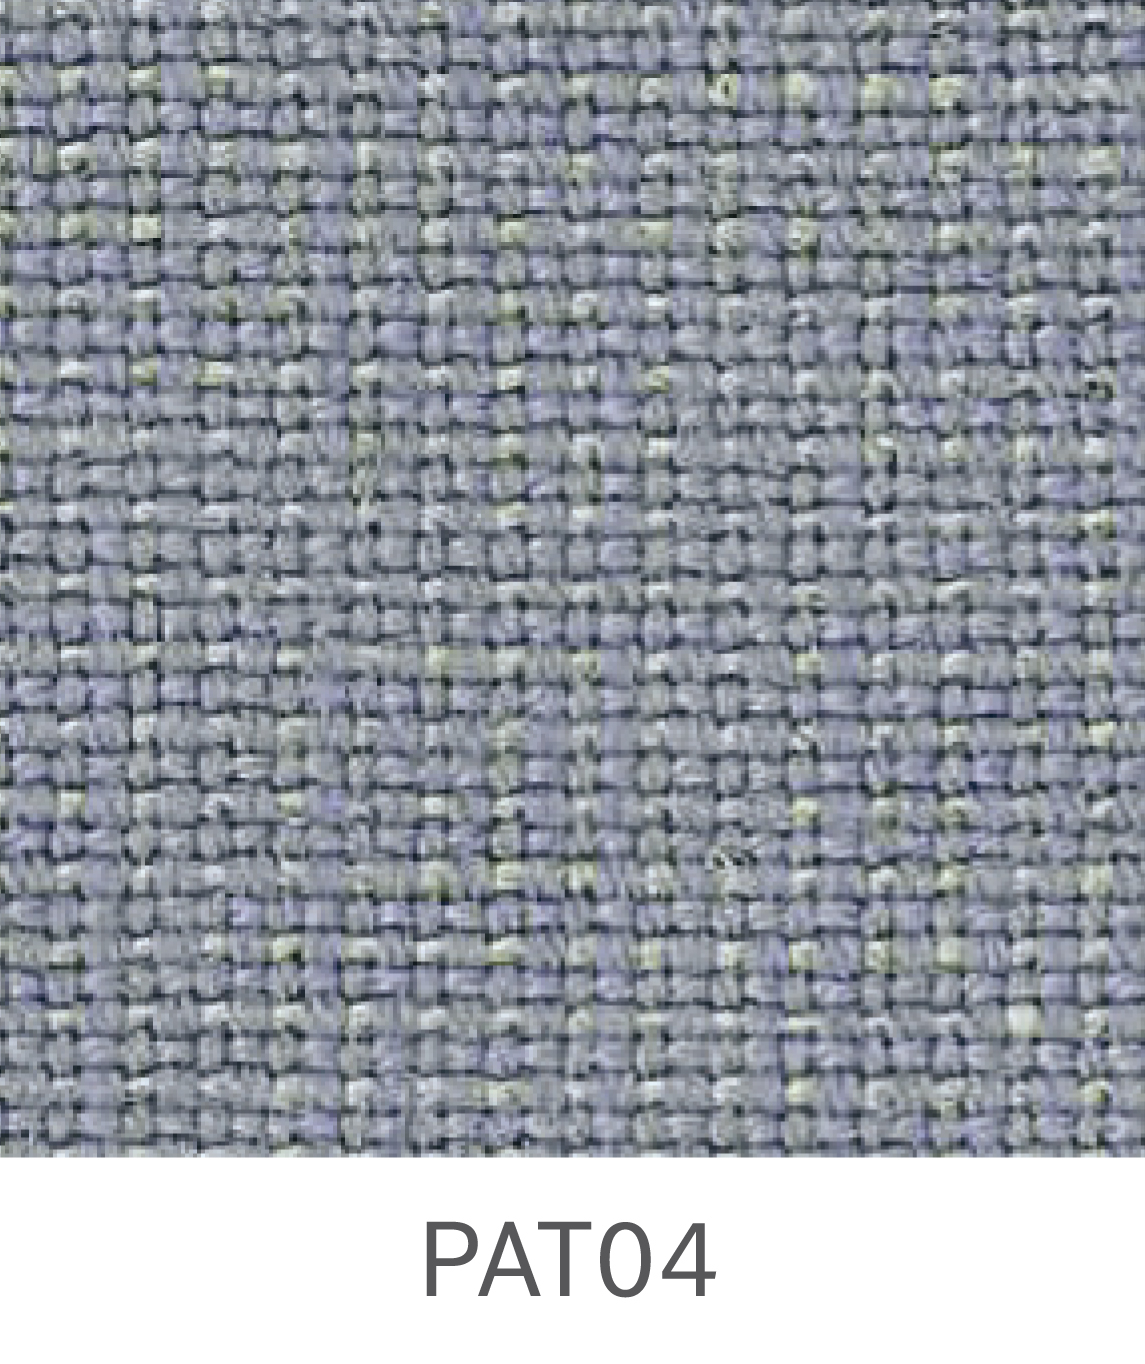 Patina – PAT04